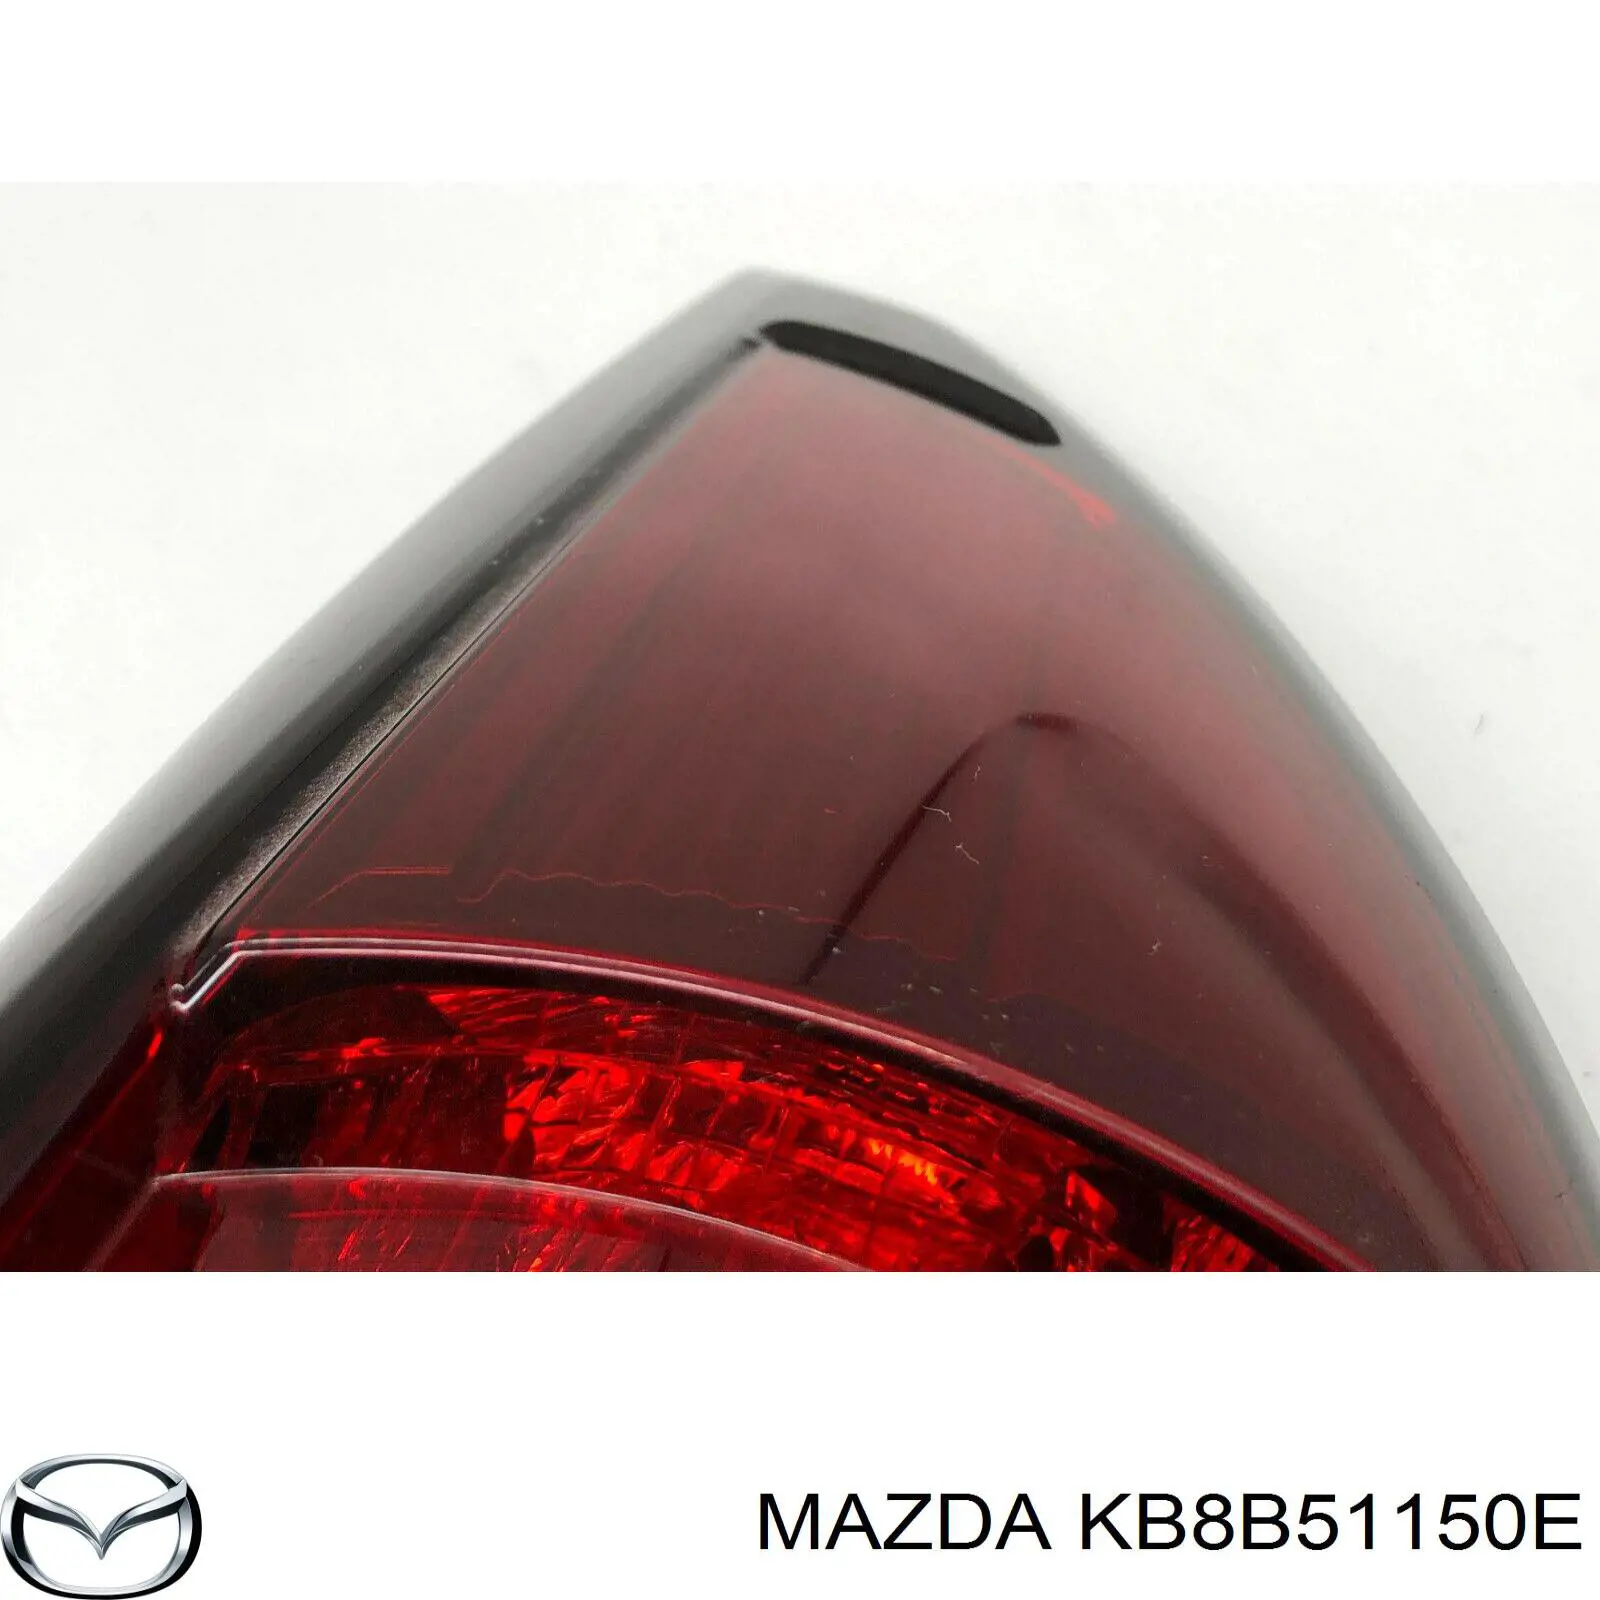 KB8B51150E Mazda 